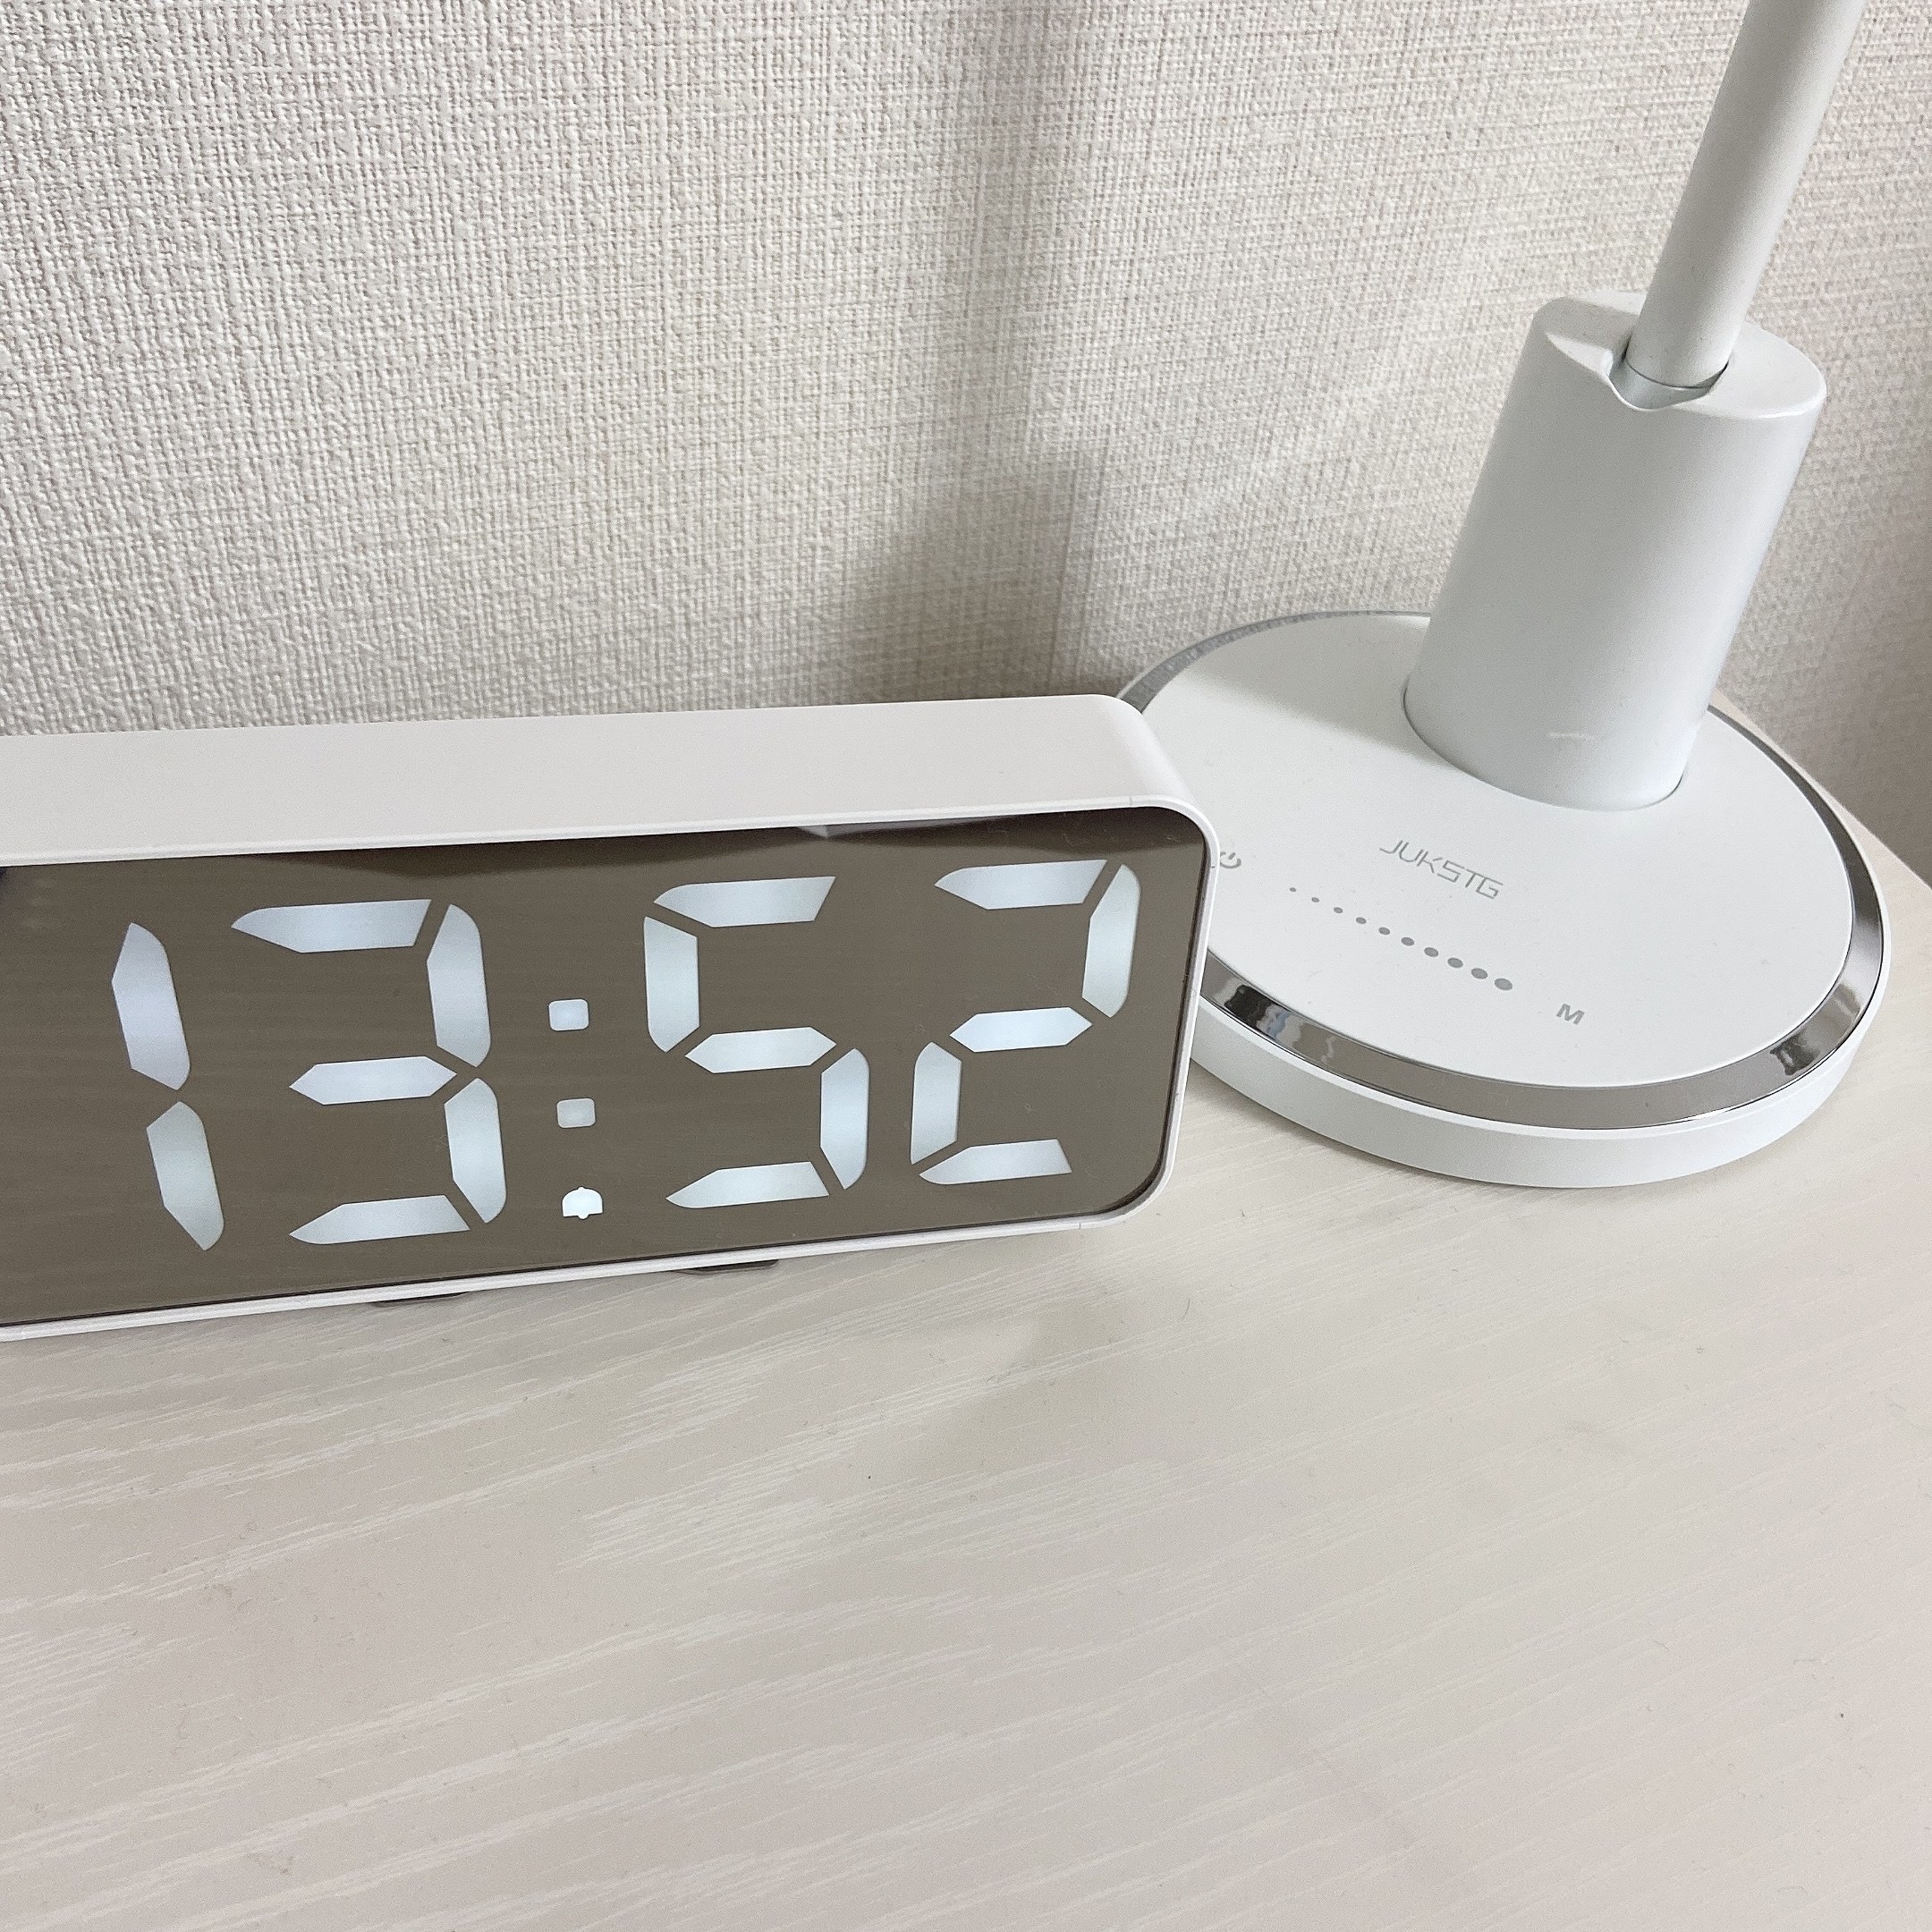 IKEA（イケア）のオススメの多機能時計「NOLLNING ノールニング 時計/温度計/アラーム」